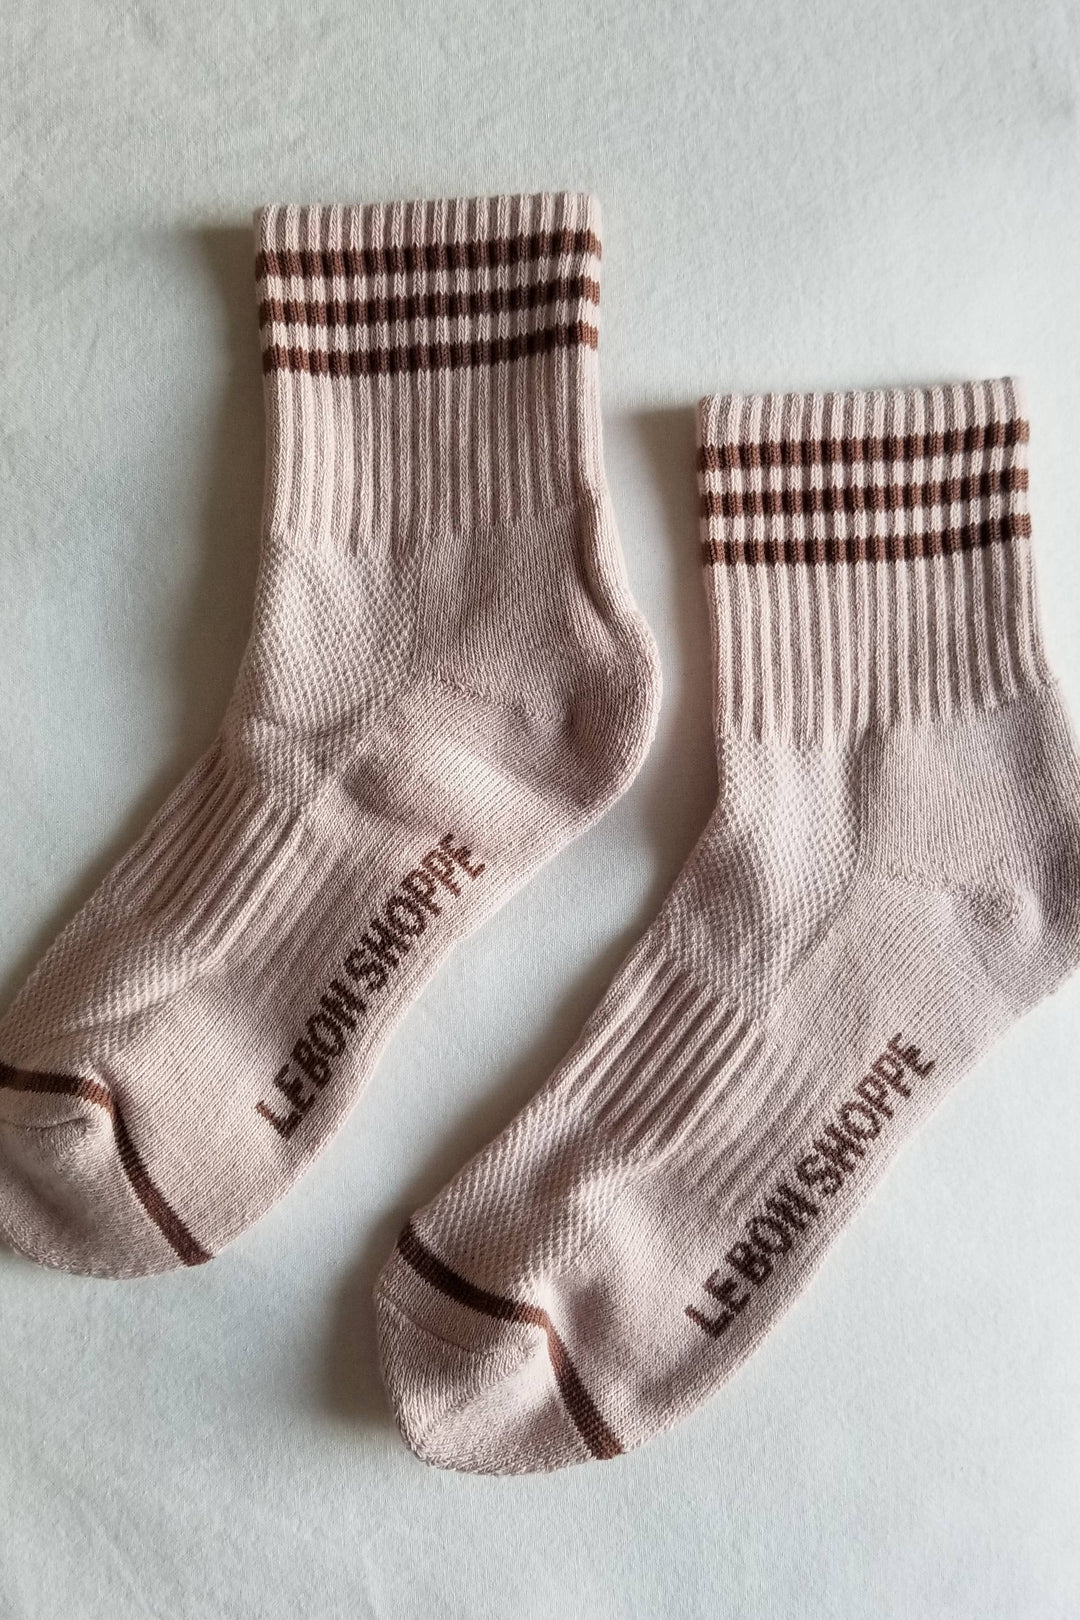 Girlfriend Socks: Hazelwood